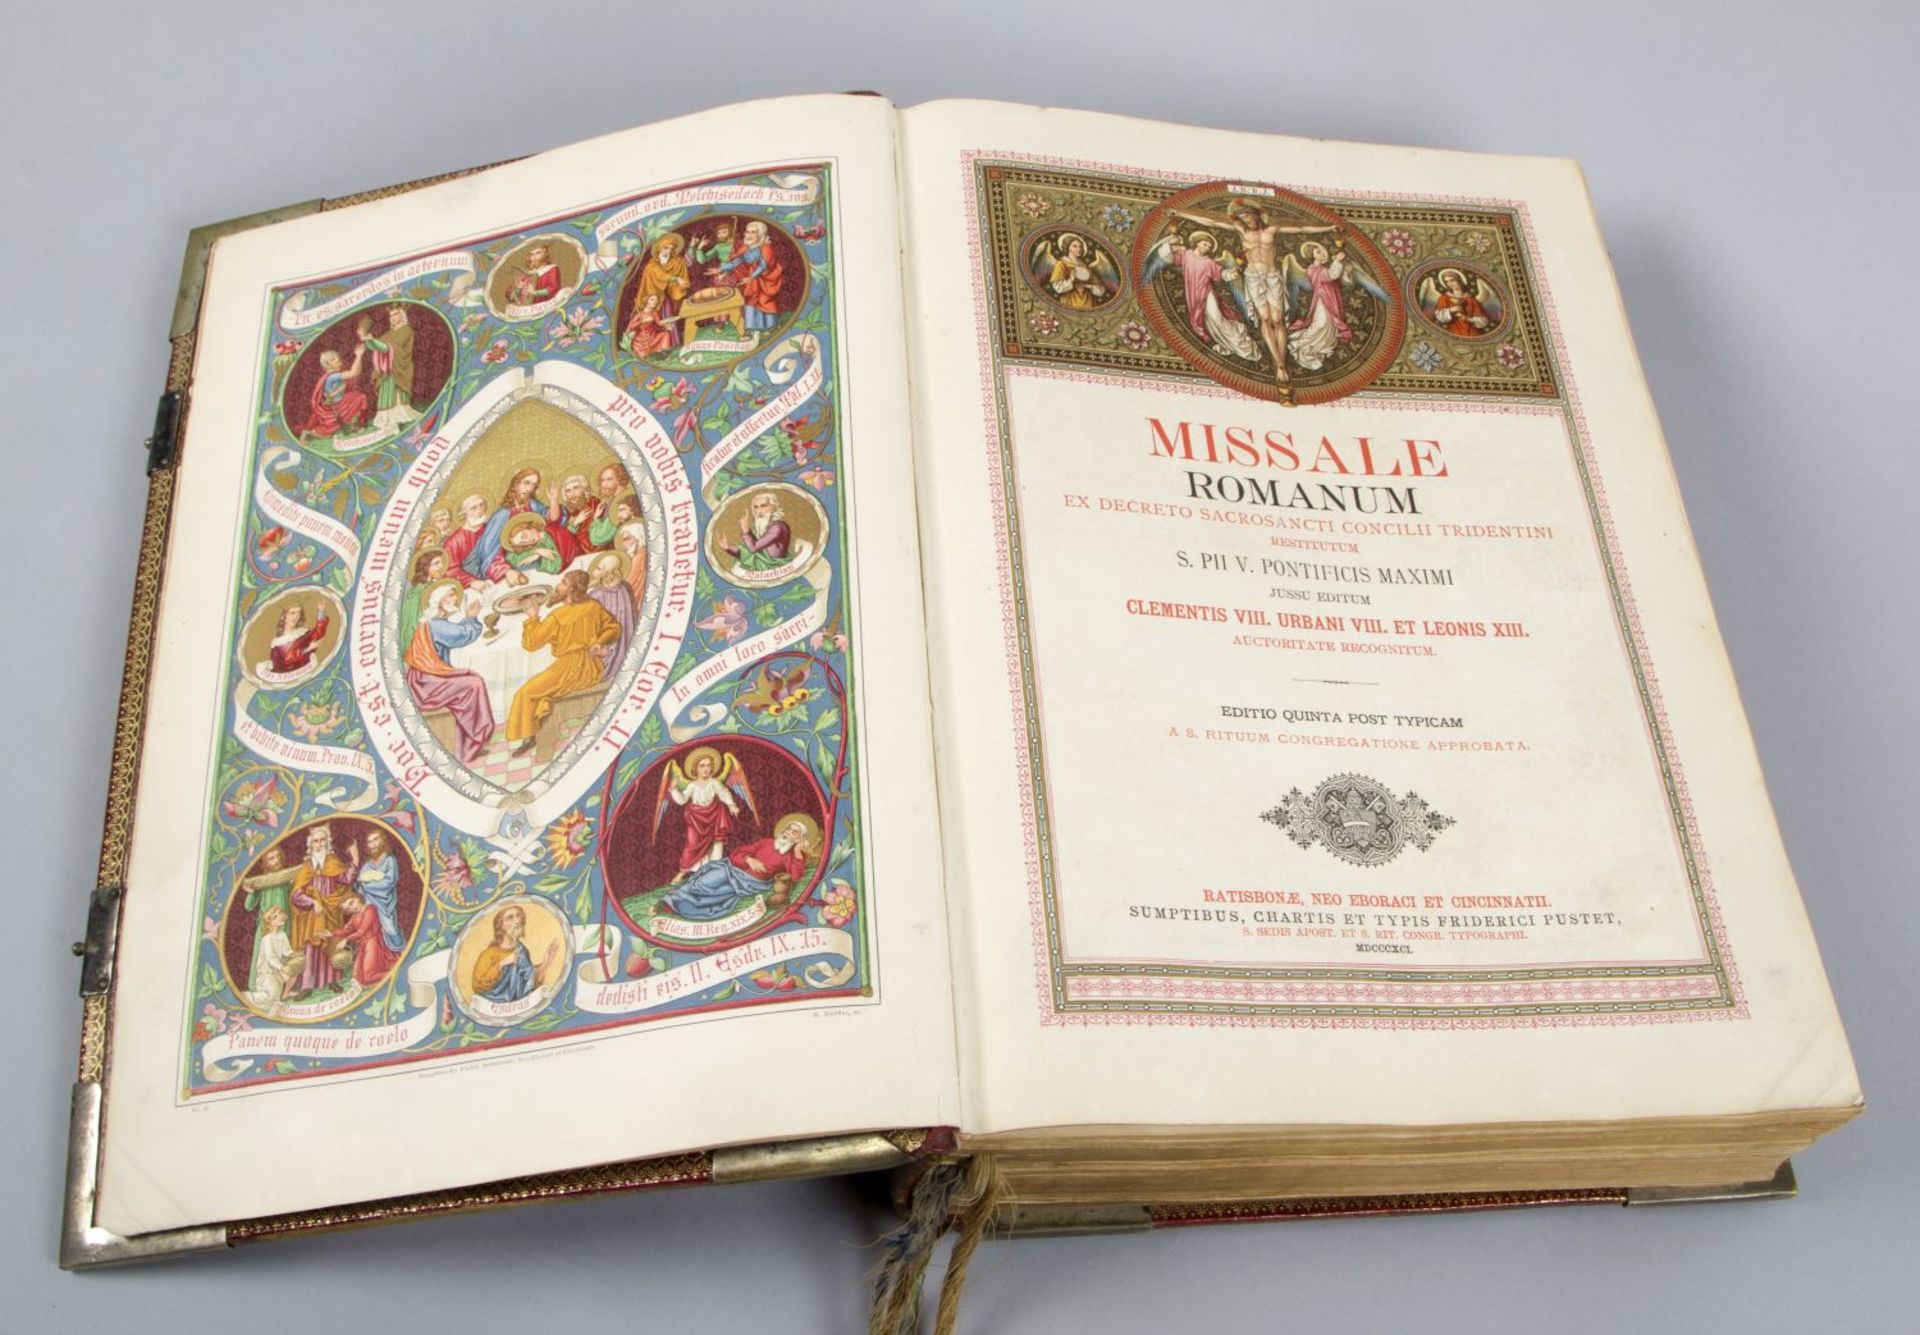 Missale Romanum Ex decreto sacrosancti concilii tridentini. Rgbg., N.Y., Cincinnati, 1891. - Bild 2 aus 3